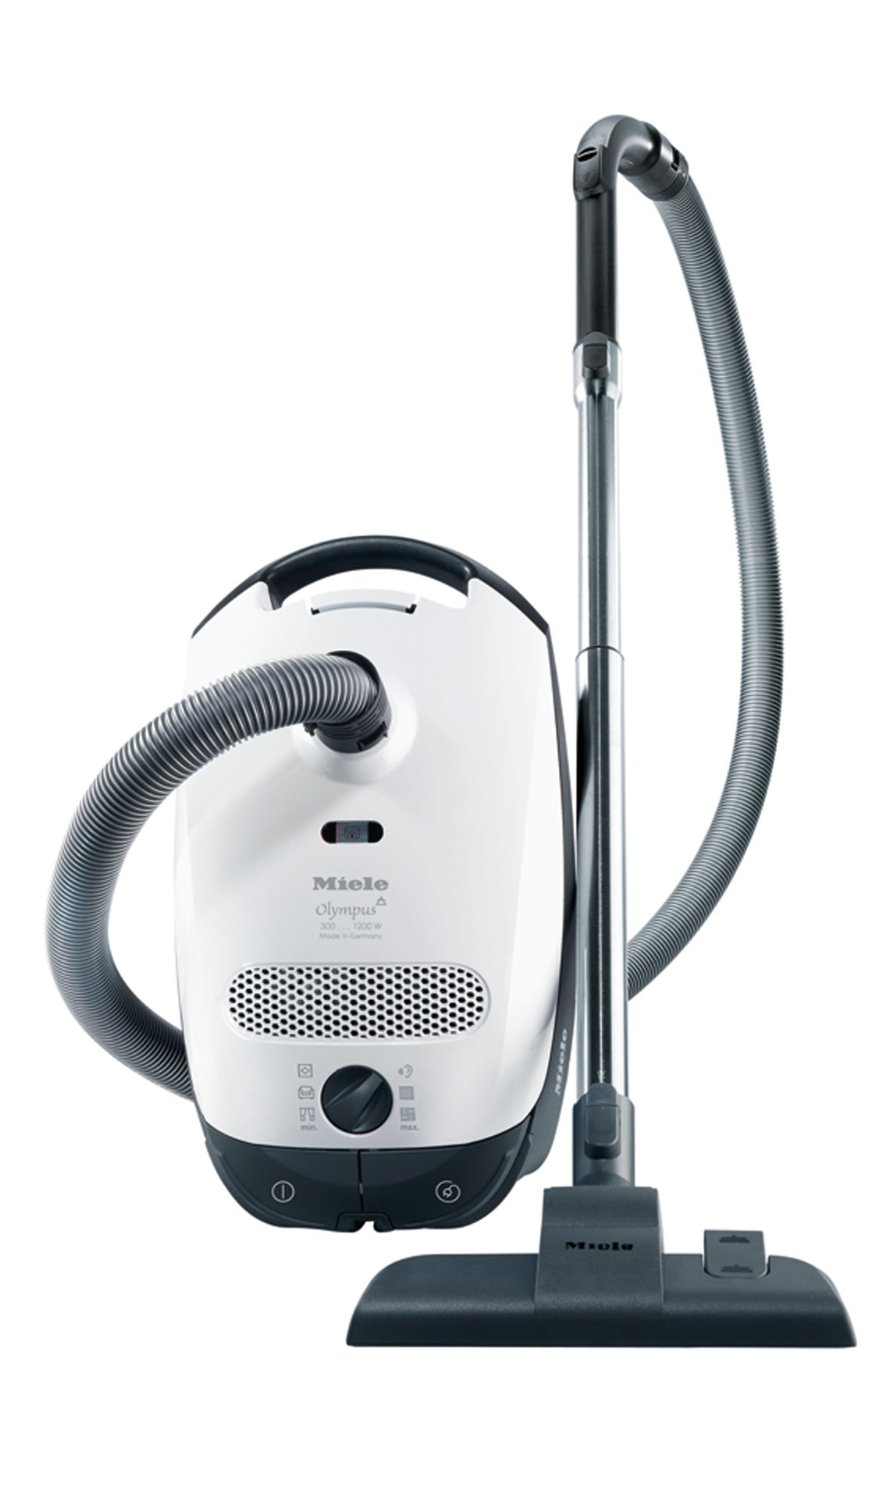 Miele S2121 Olympus Vacuum Cleaner